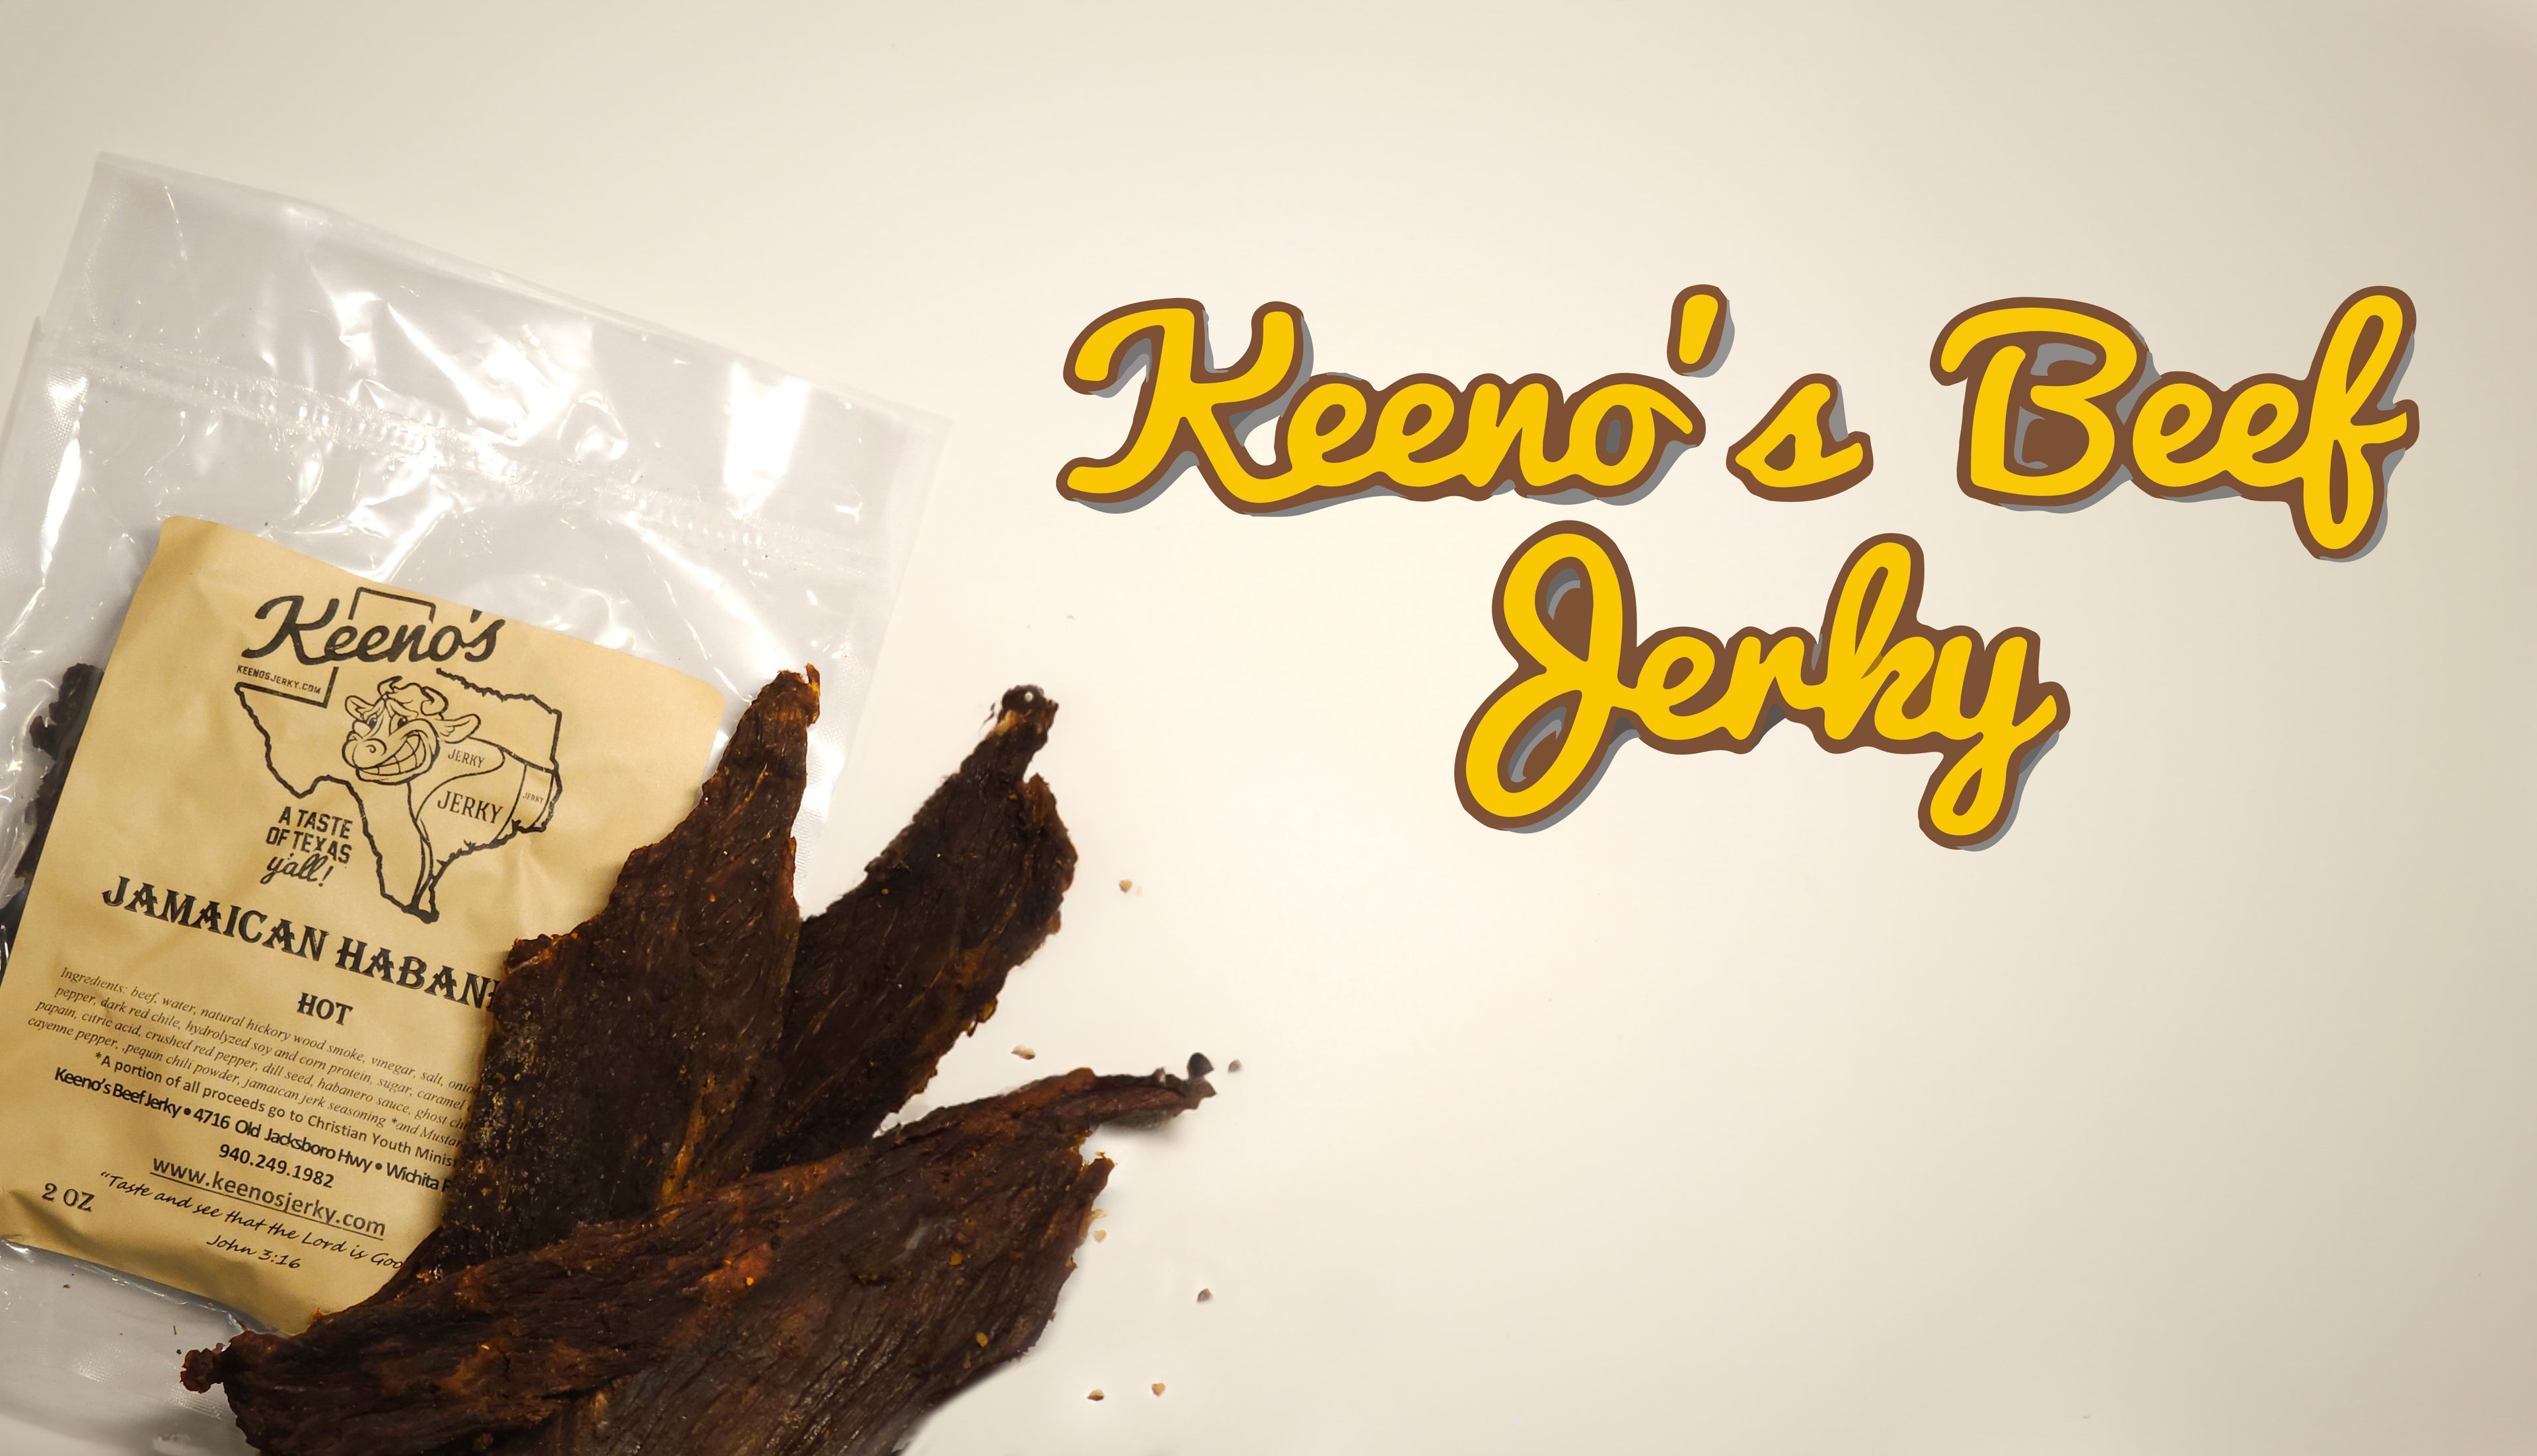 Jerky Keeno's Beef Jerky